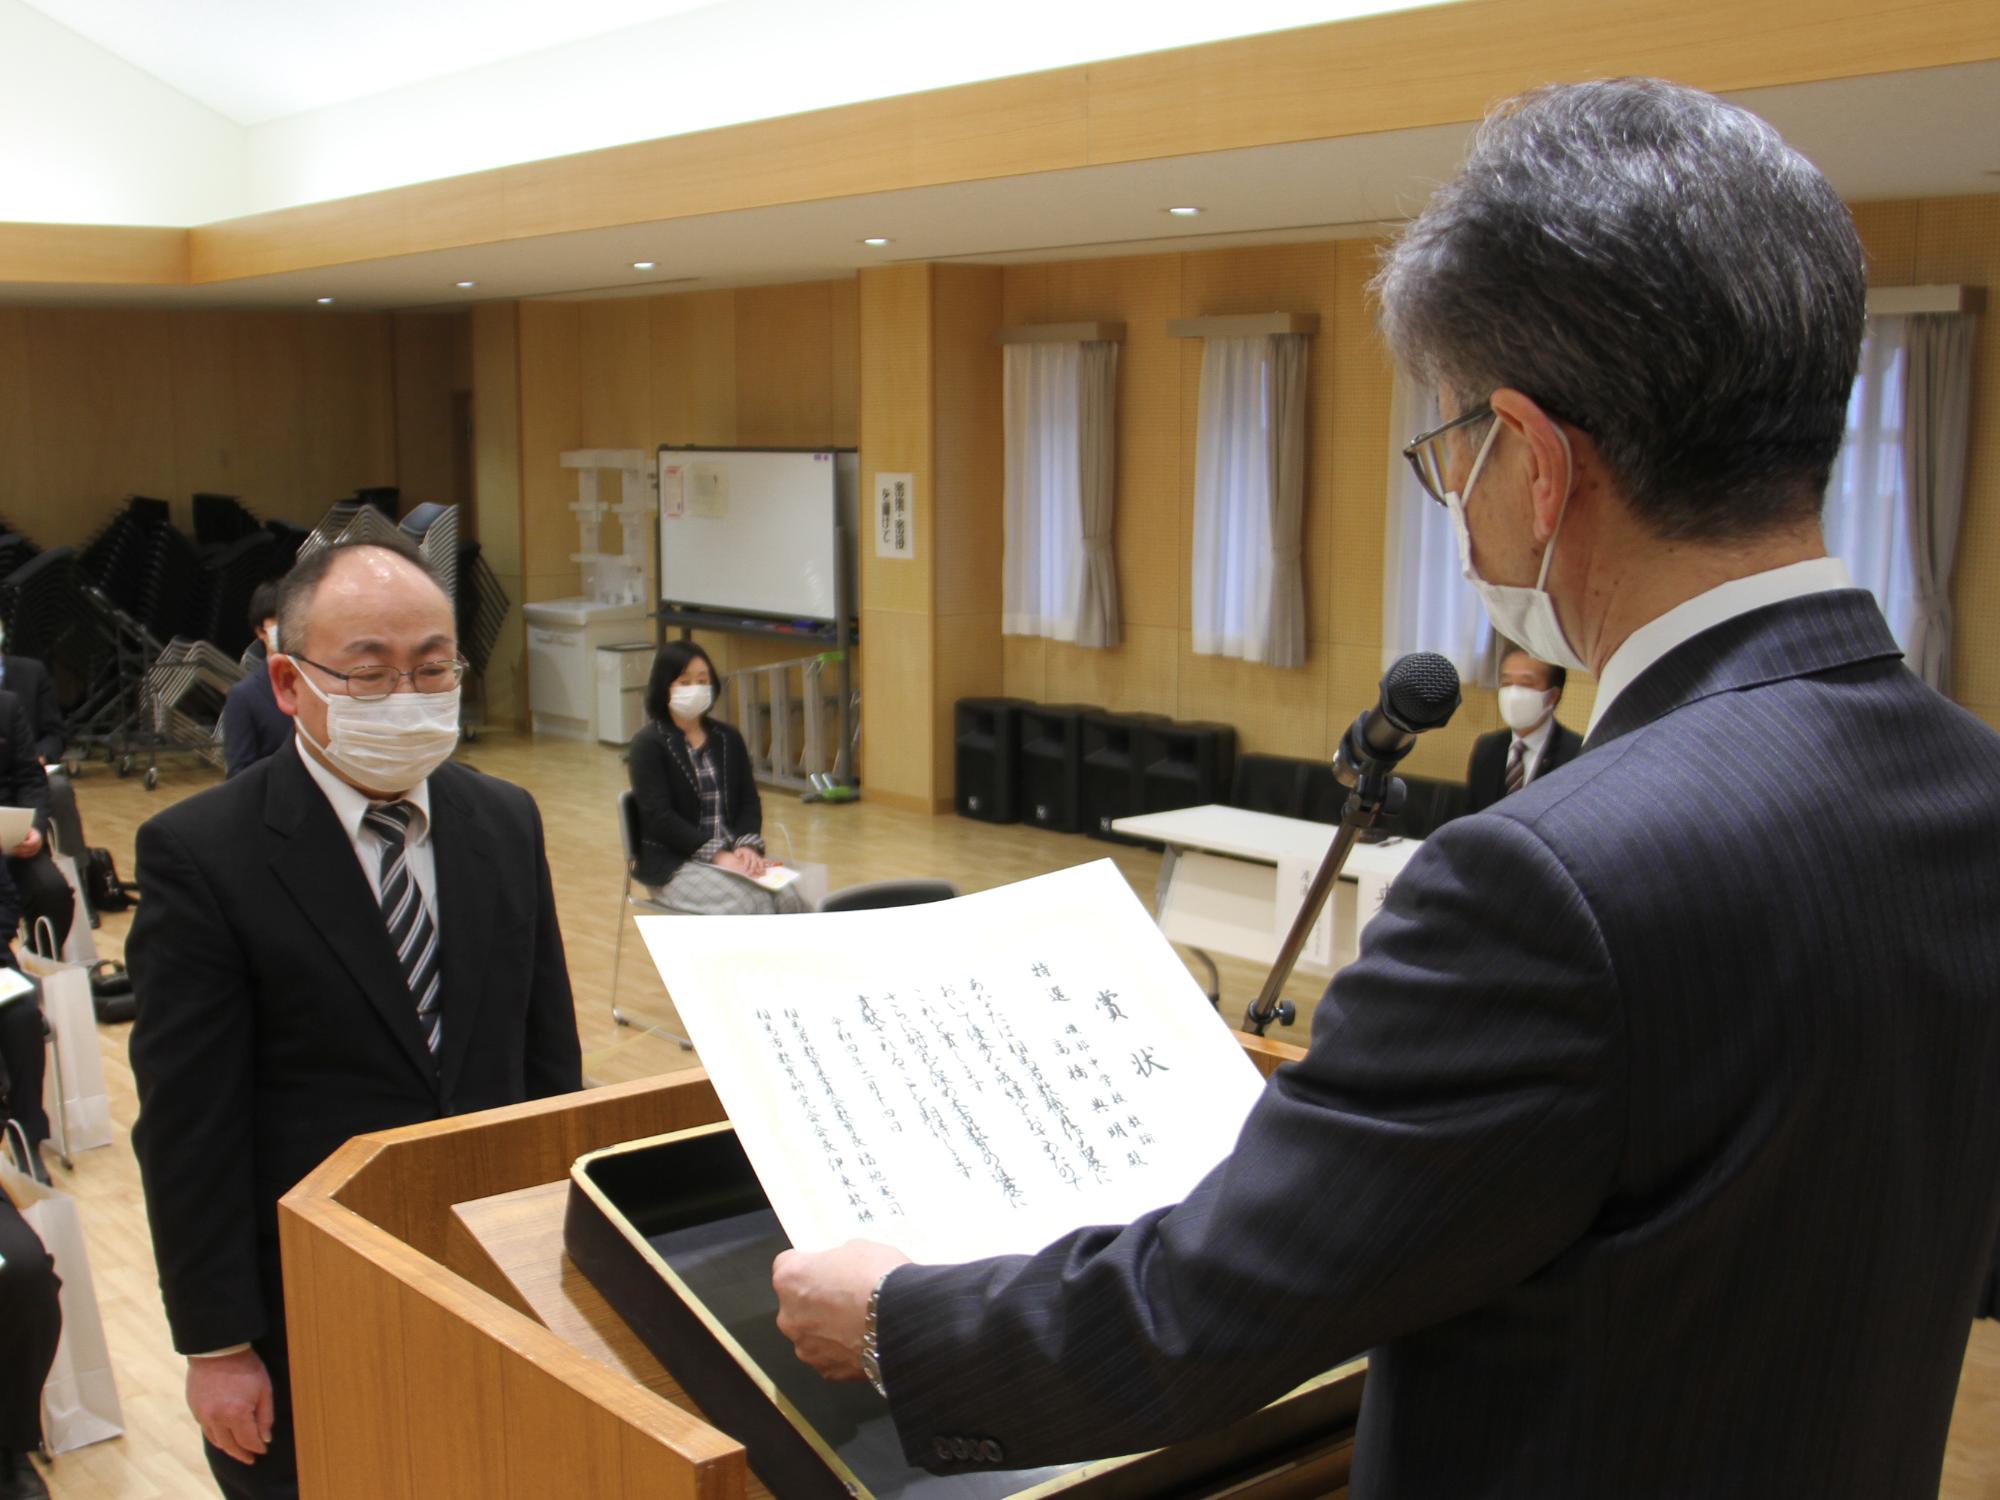 相馬市教職員研究作品表彰式で特選に選定された高橋教諭が表彰を受ける様子